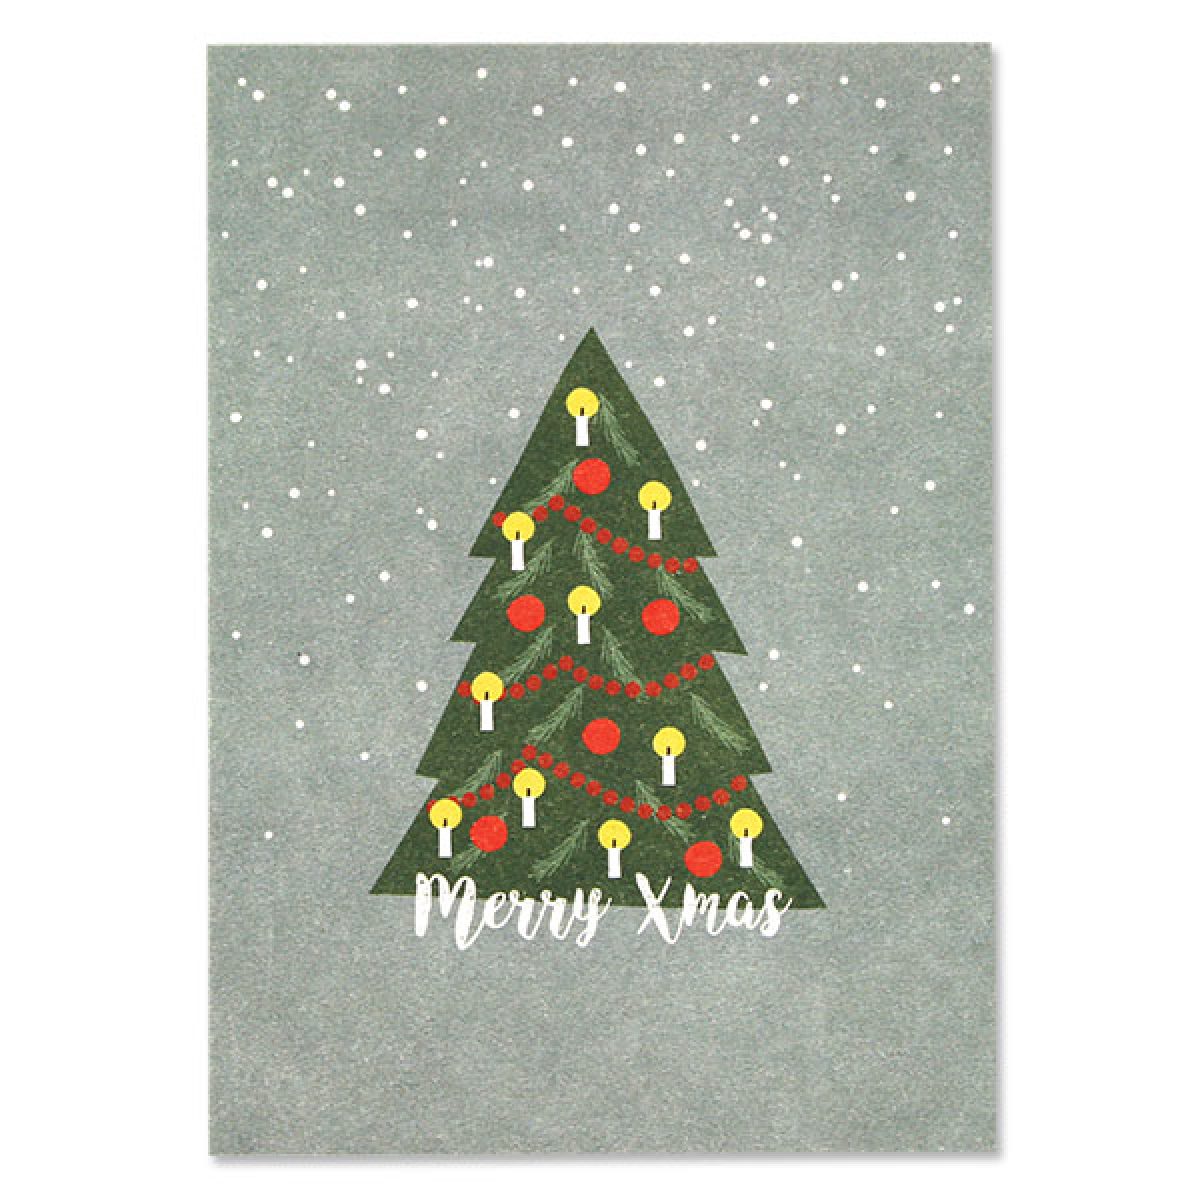 Postkarte Weihnachtsbaum und Schneeflocken – Merry Xmas ava&yves www.myhomeandmore.de